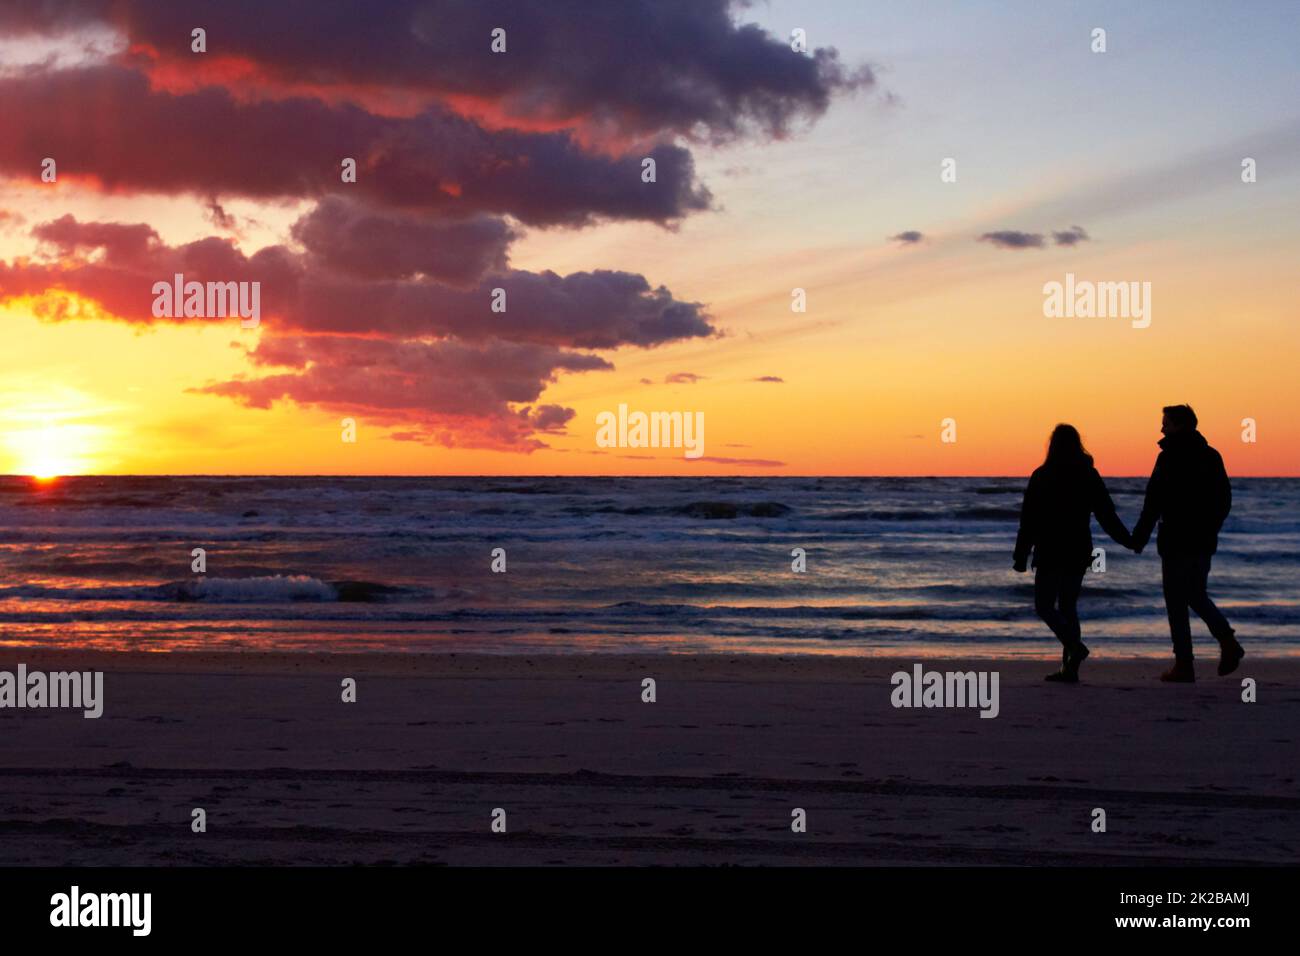 Theyve a trouvé leur paradis. Silhouette d'un couple qui va faire une promenade sur la plage au coucher du soleil. Banque D'Images